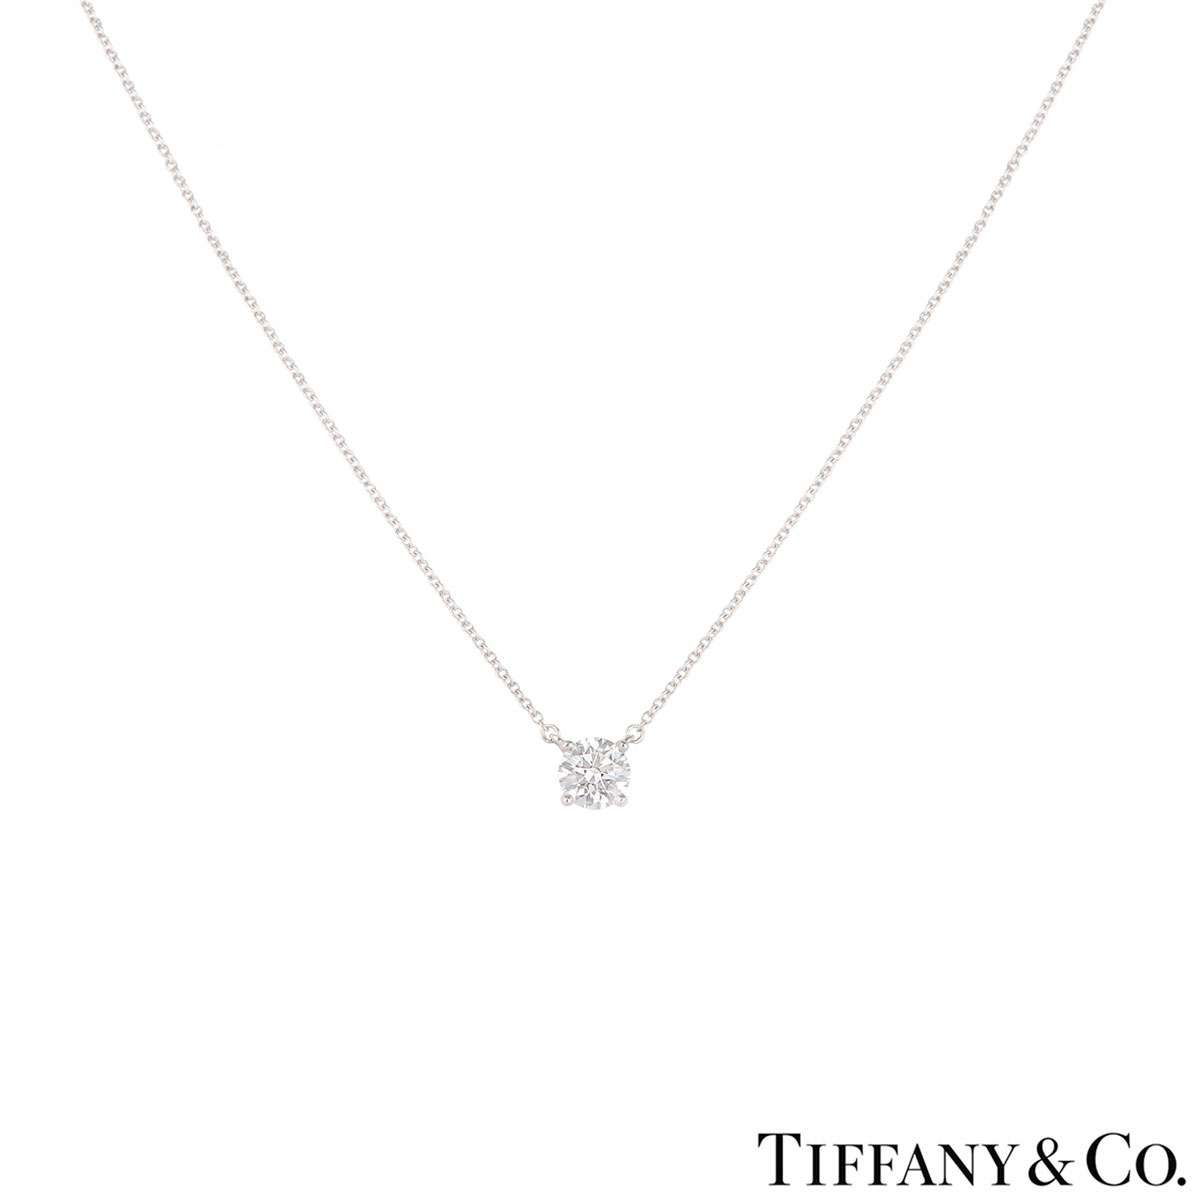 tiffany & co diamond